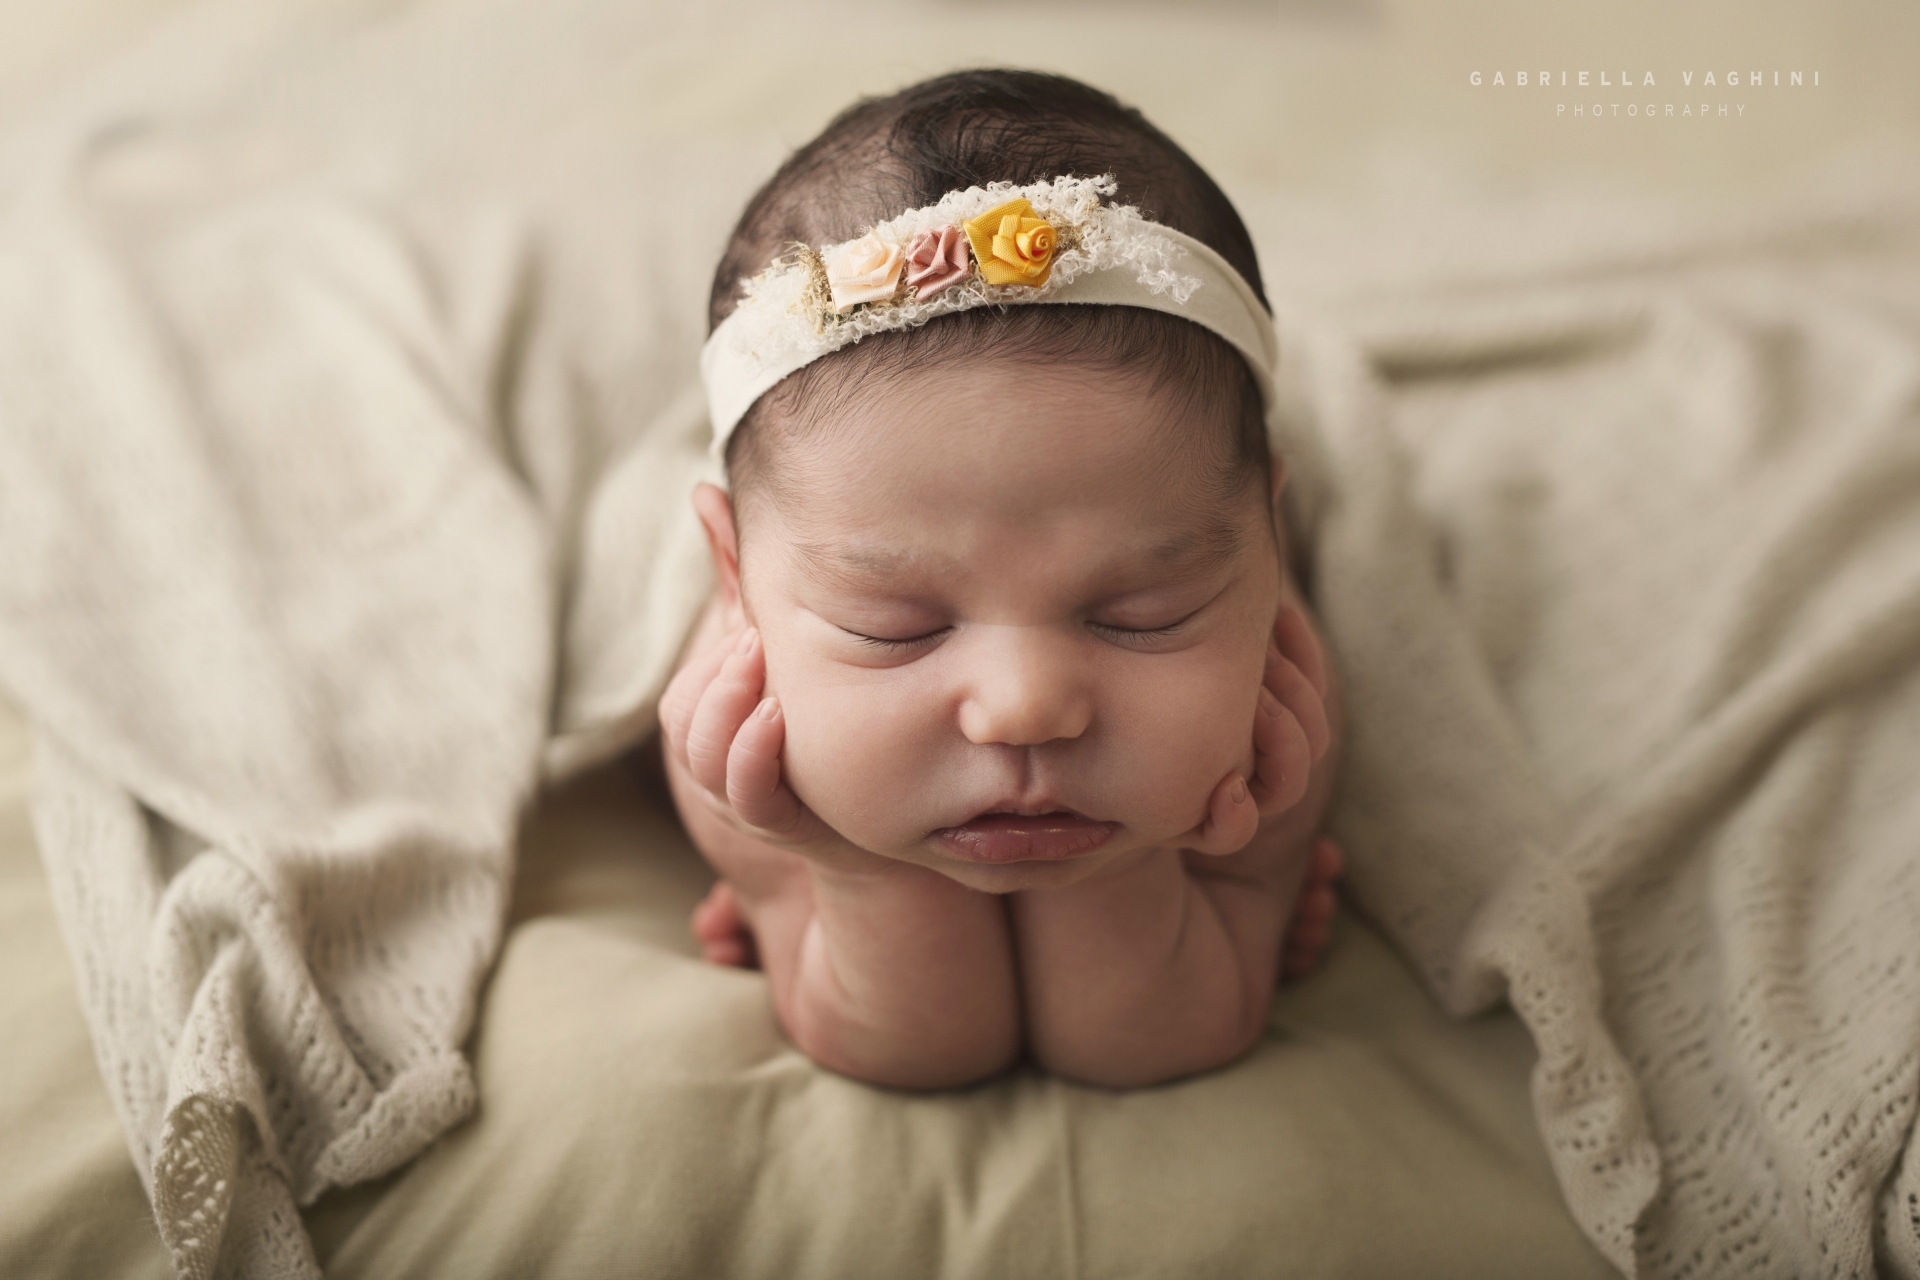 newbornphotography_gaianewborn_gabriellavaghini_fotografa_fotografiafamiglia_roma